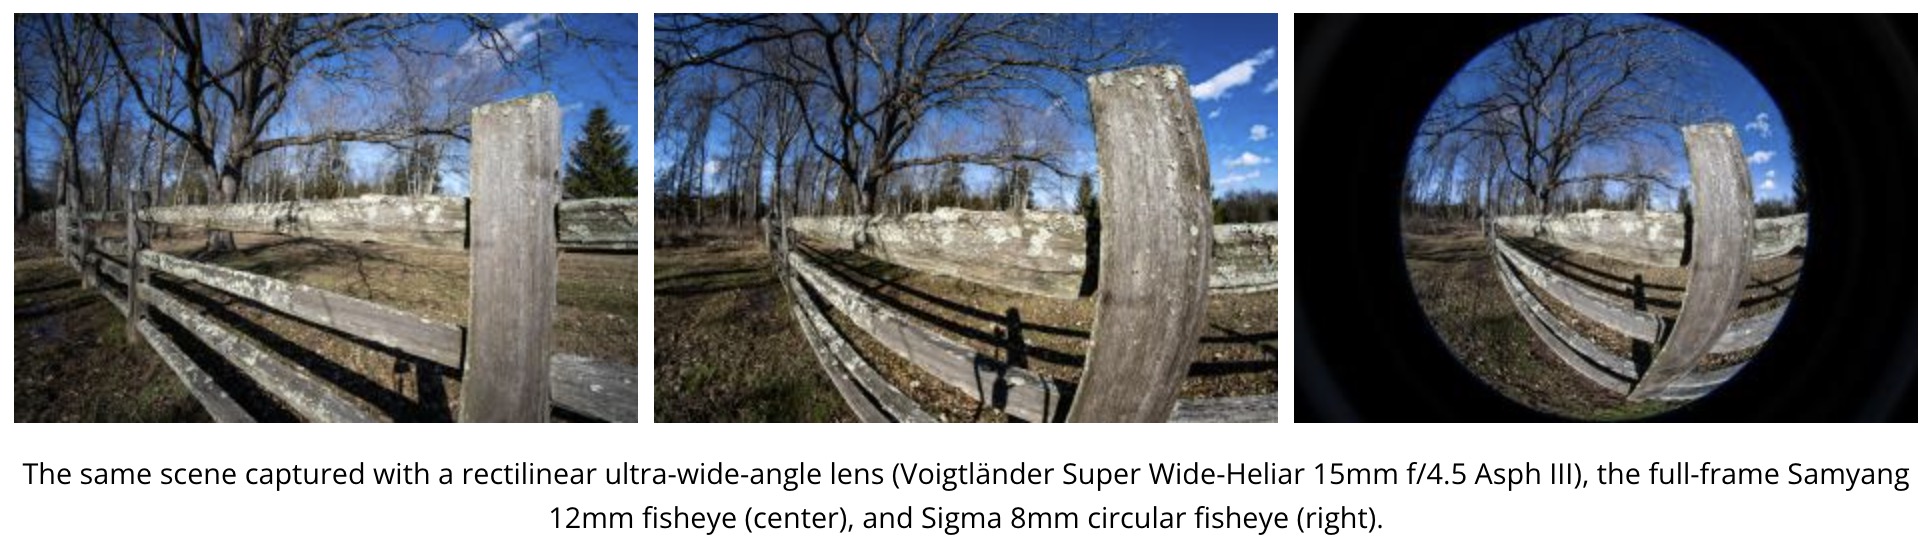 Flat Earth Fisheye Lenses